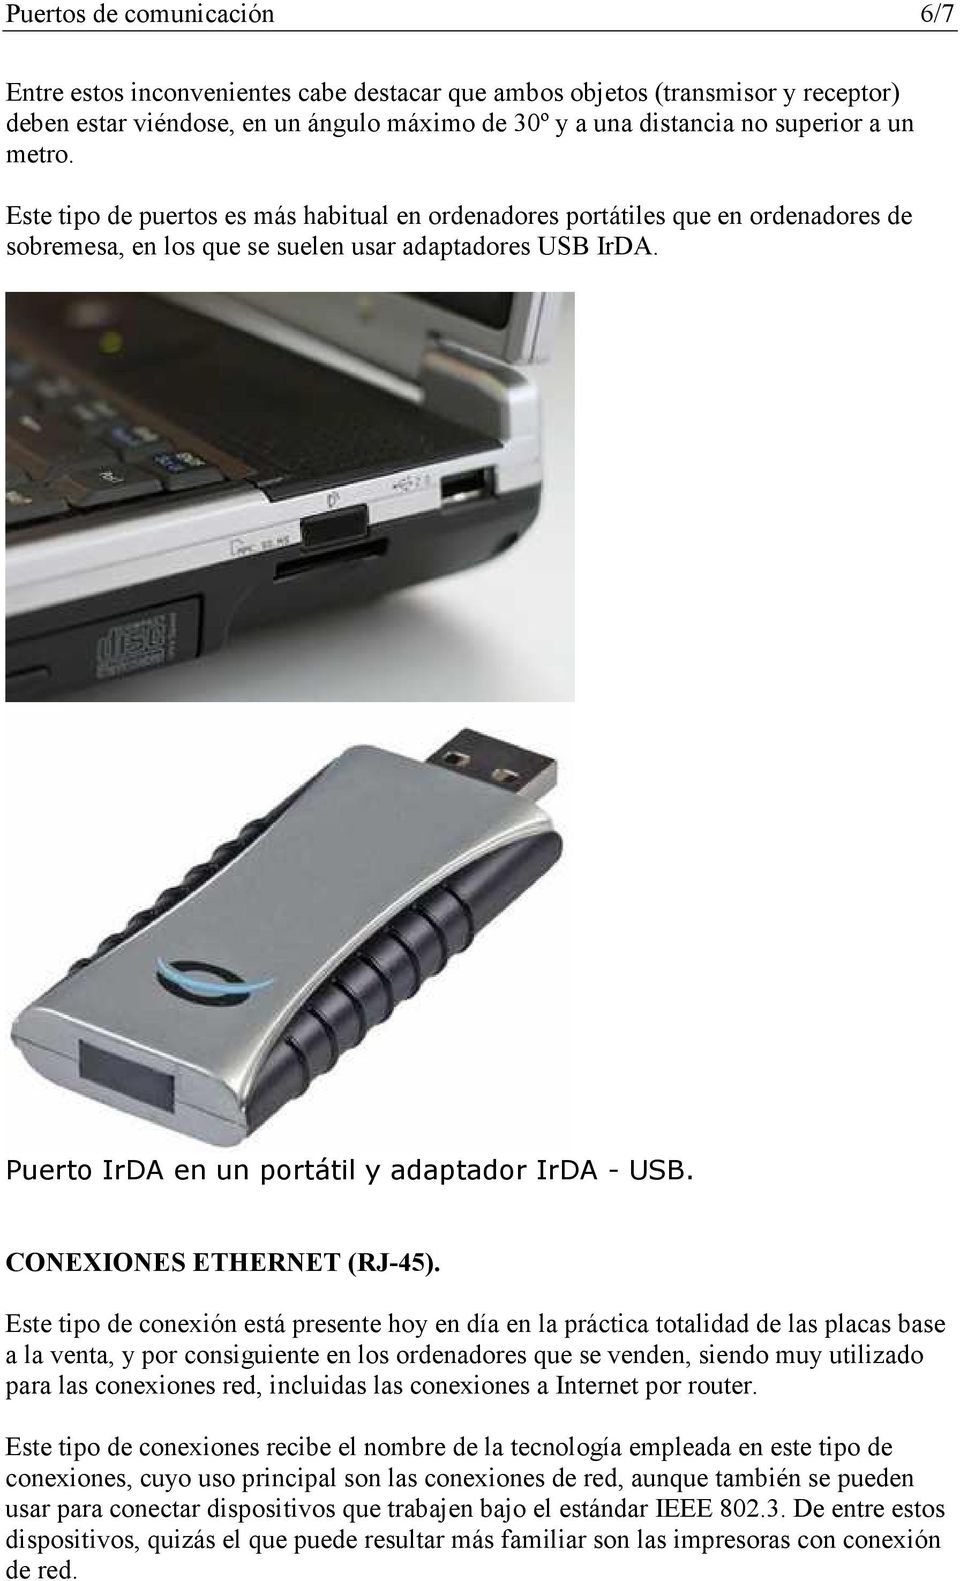 Puerto IrDA en un portátil y adaptador IrDA - USB. CO EXIO ES ETHER ET (RJ-45).